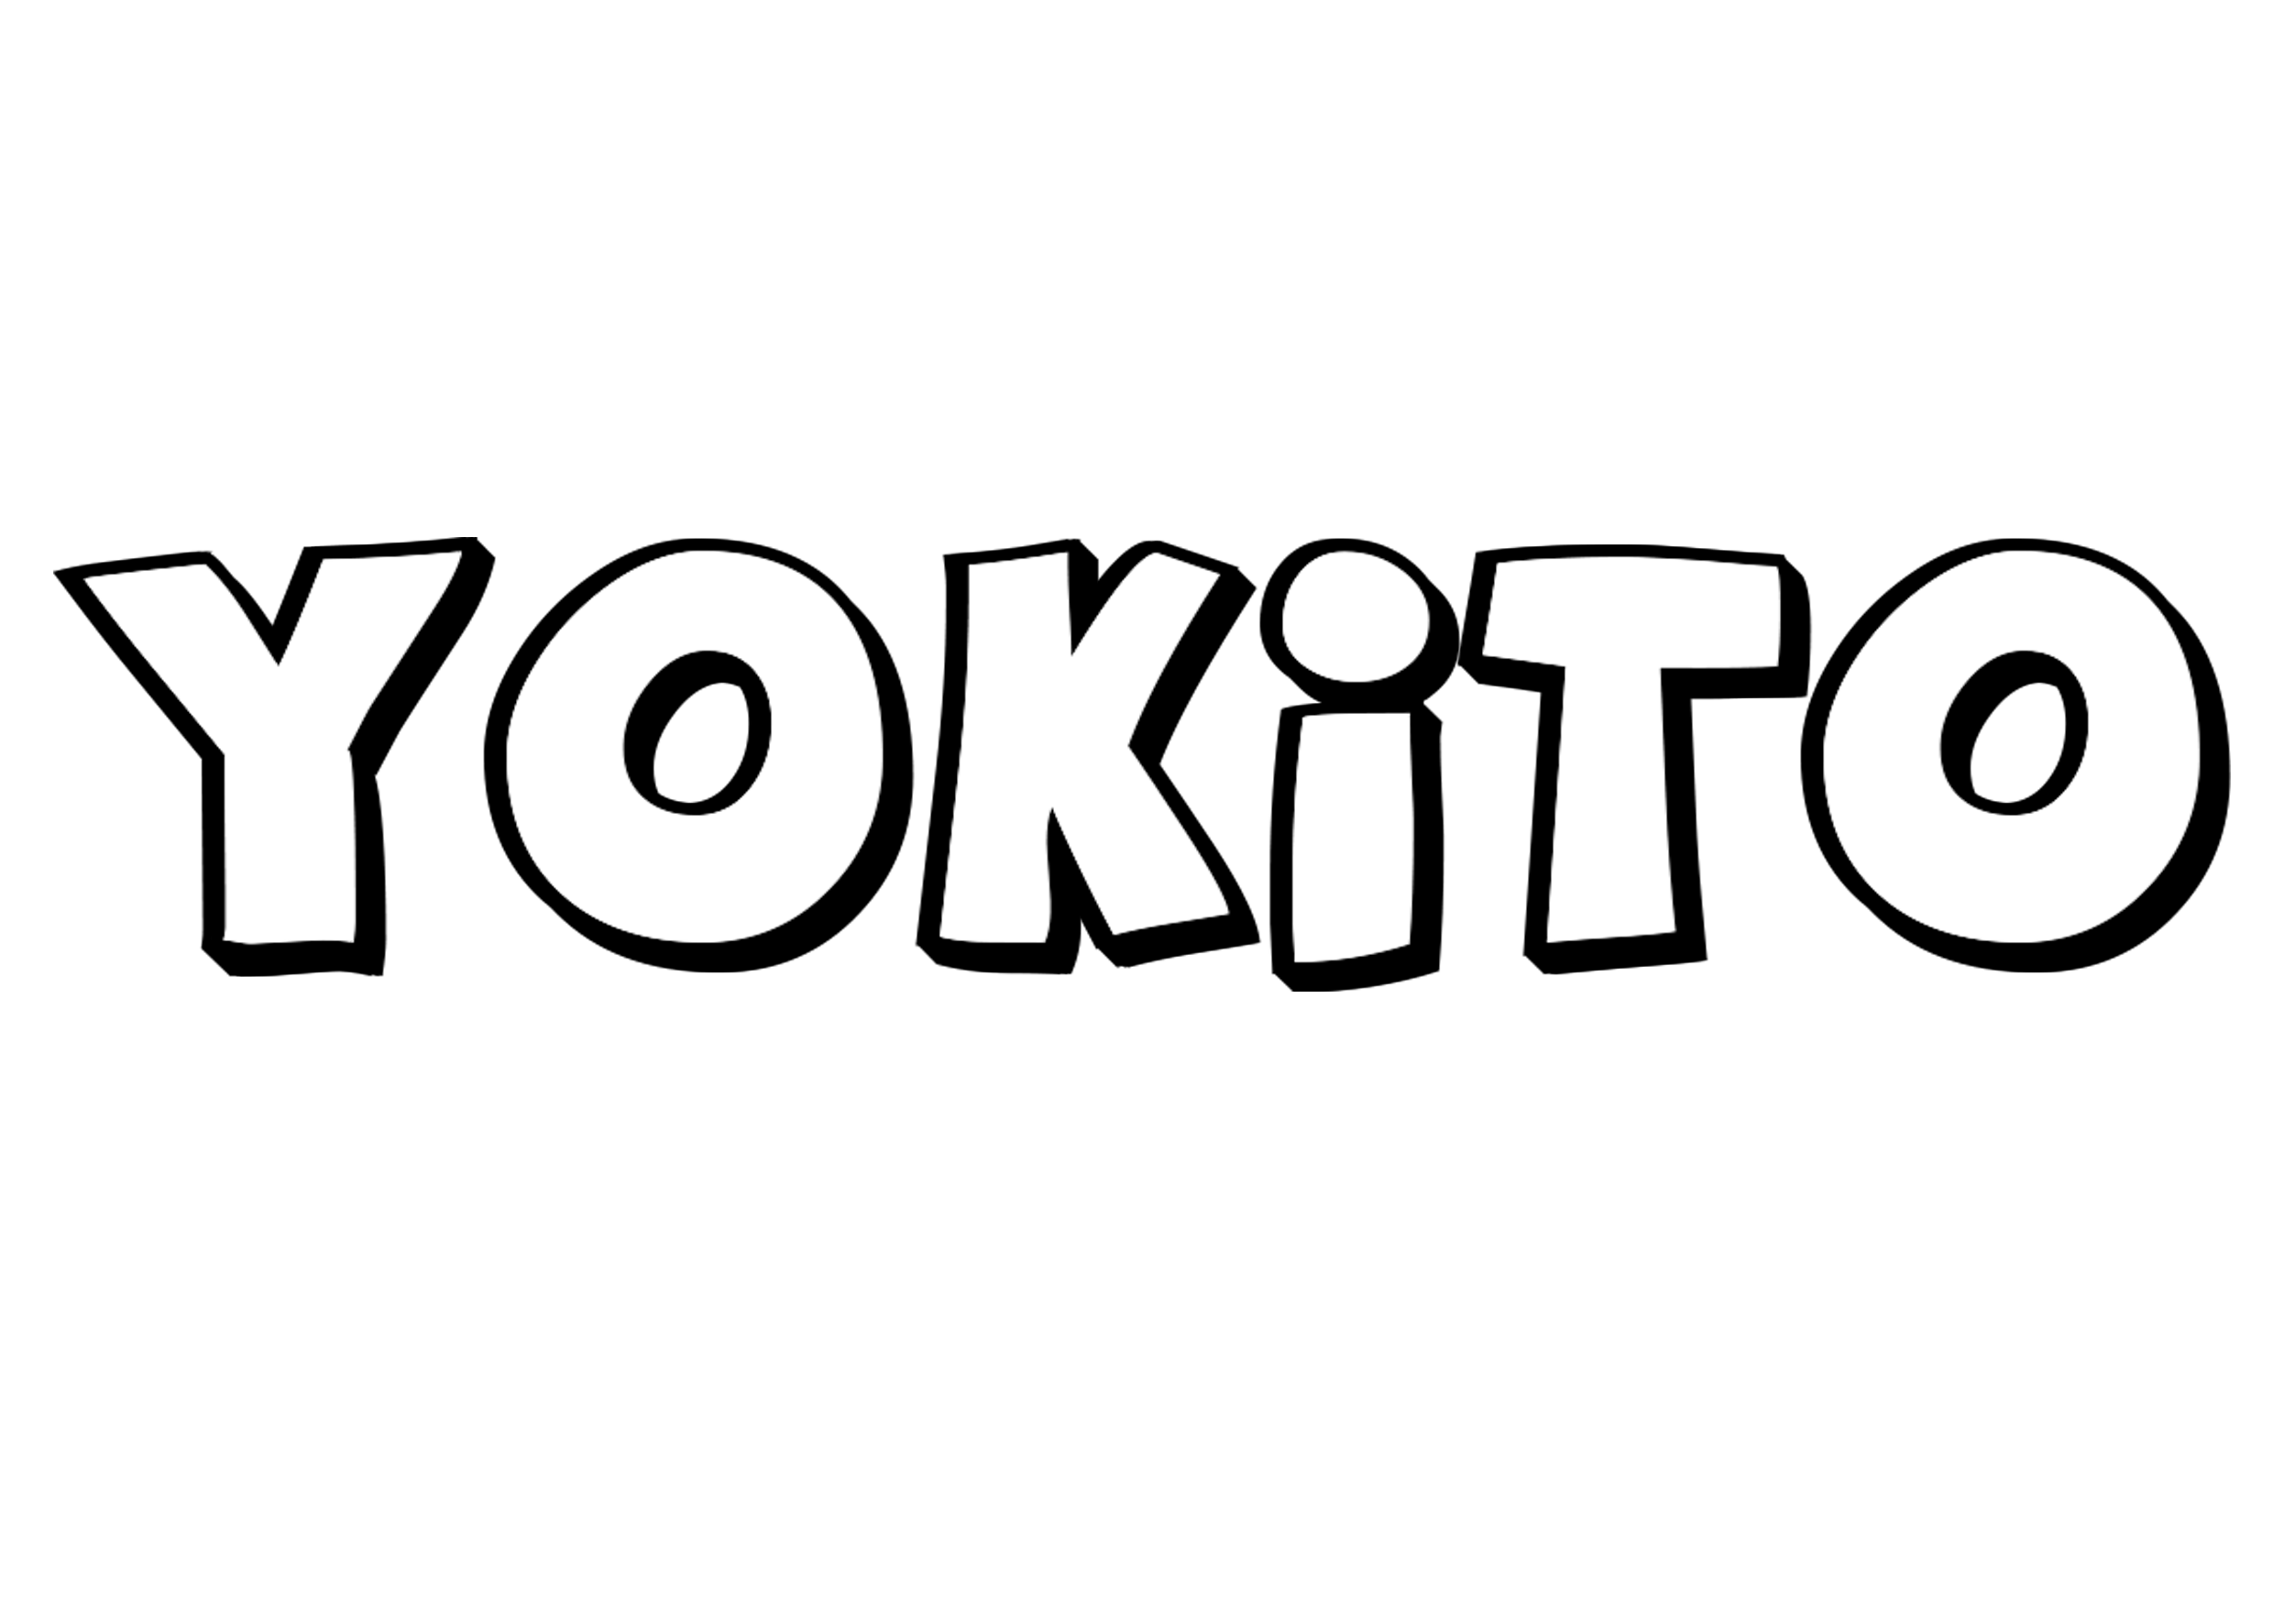 YokitoShop